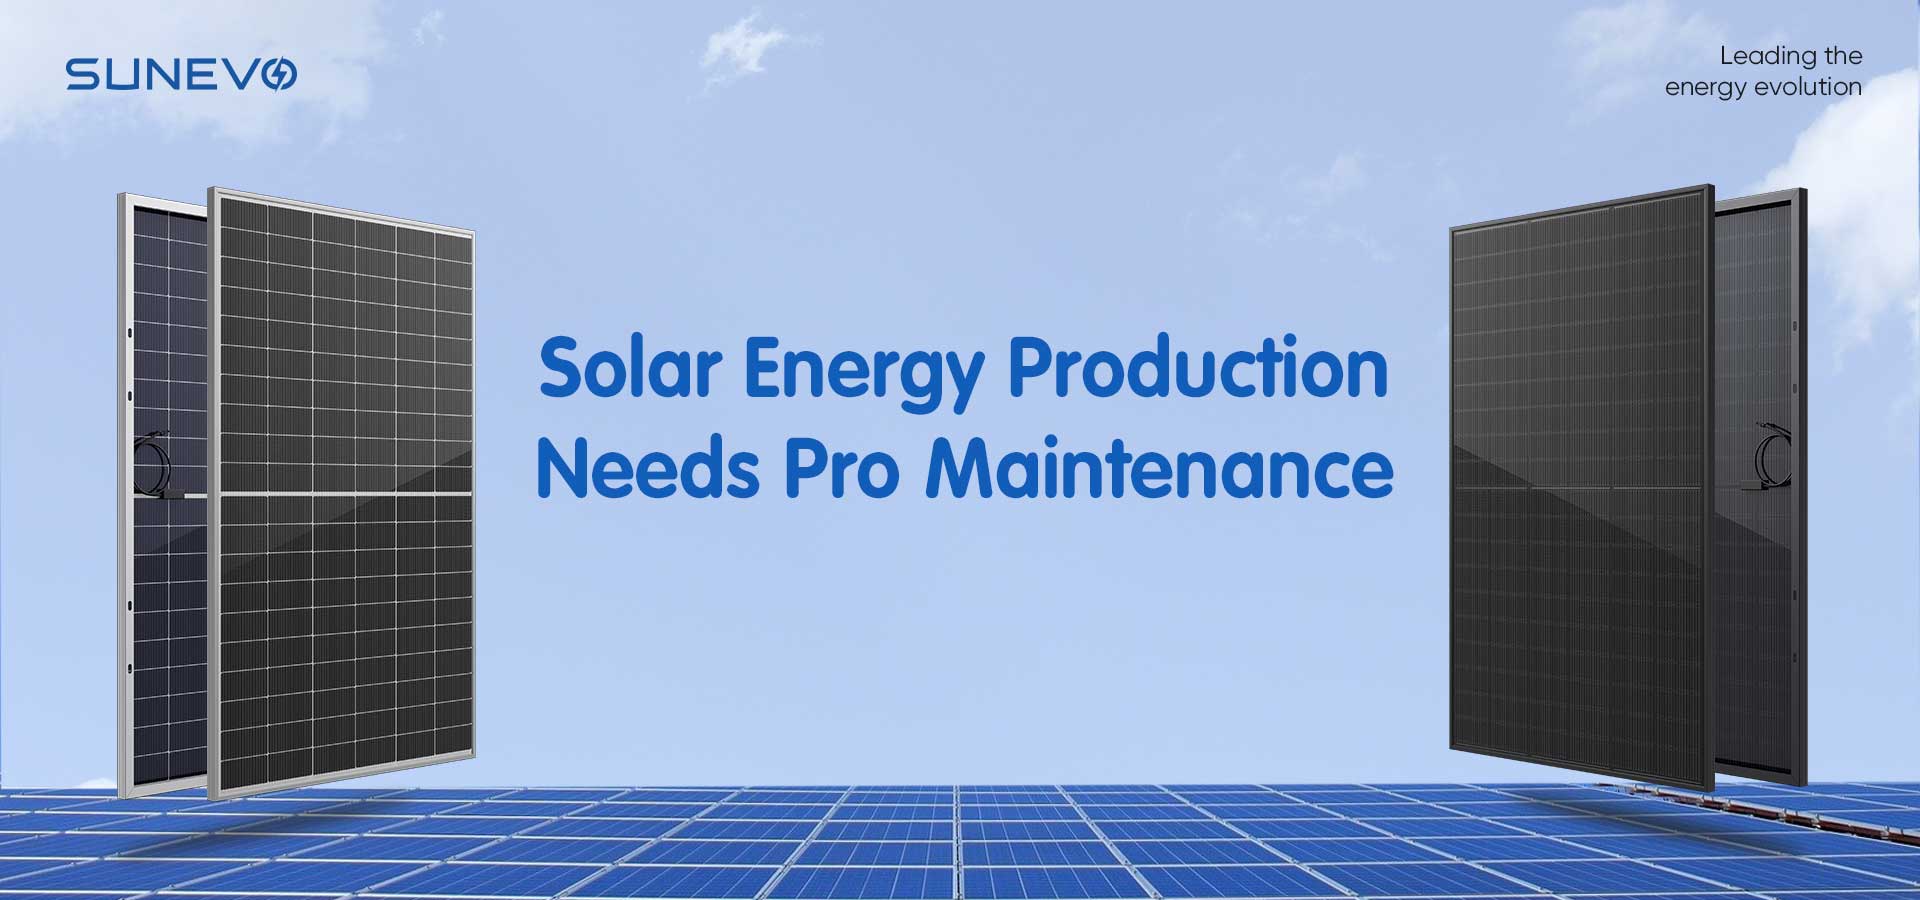 Sfrutta Pro Maintenance per la creazione ottimale di energia solare